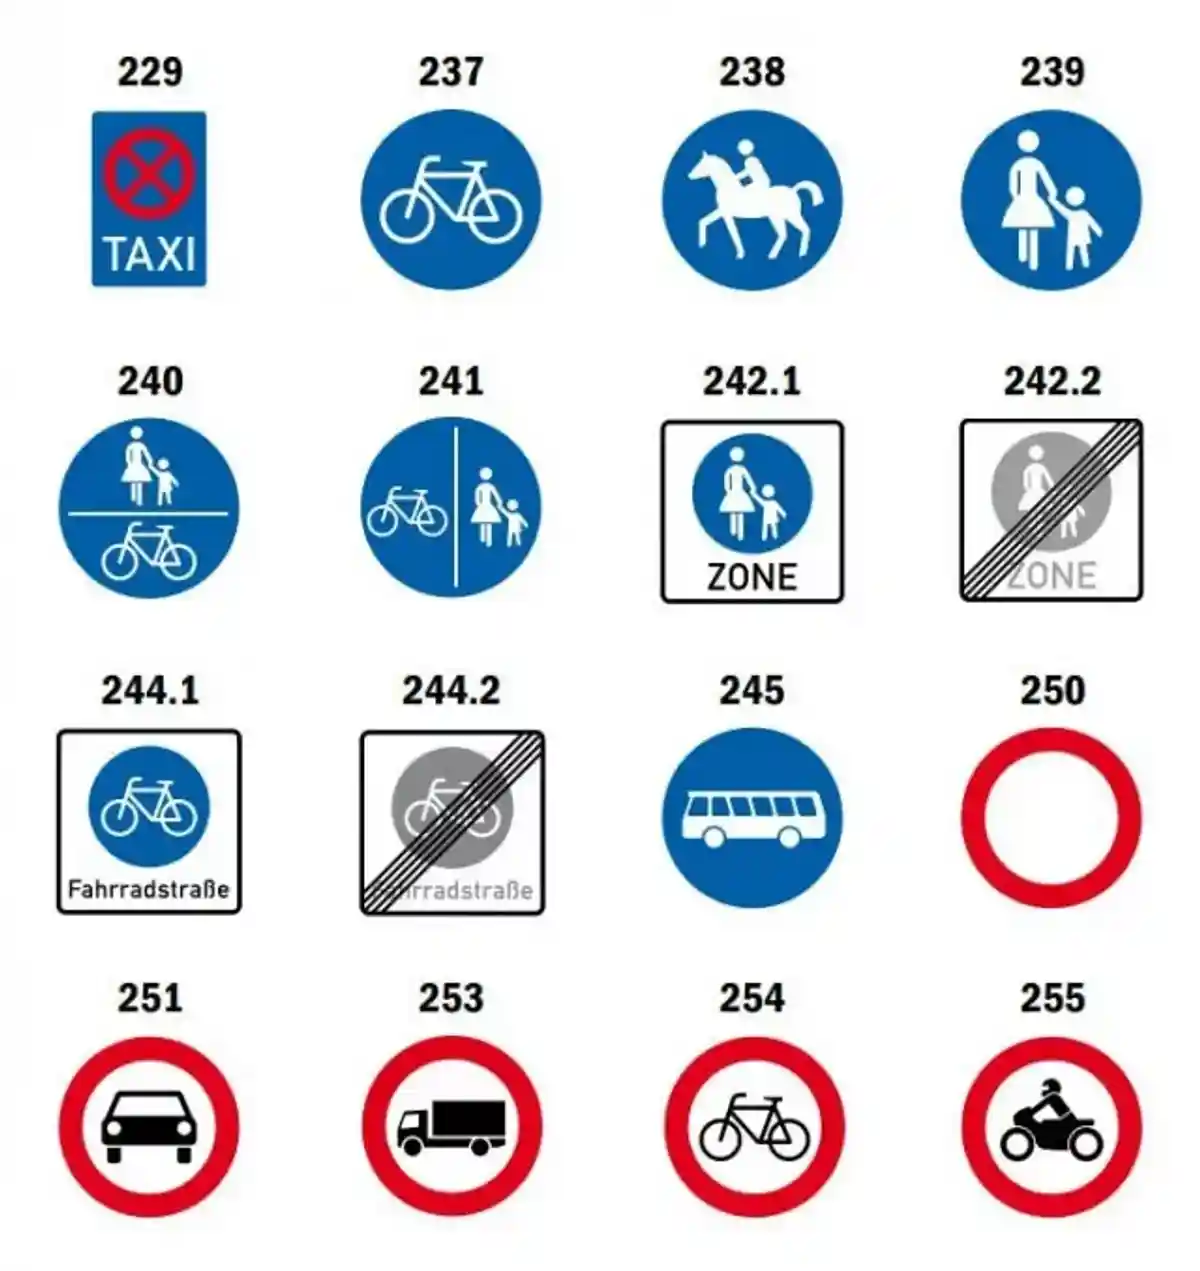 Примеры дорожных знаков в Германии. Фото: ADAC